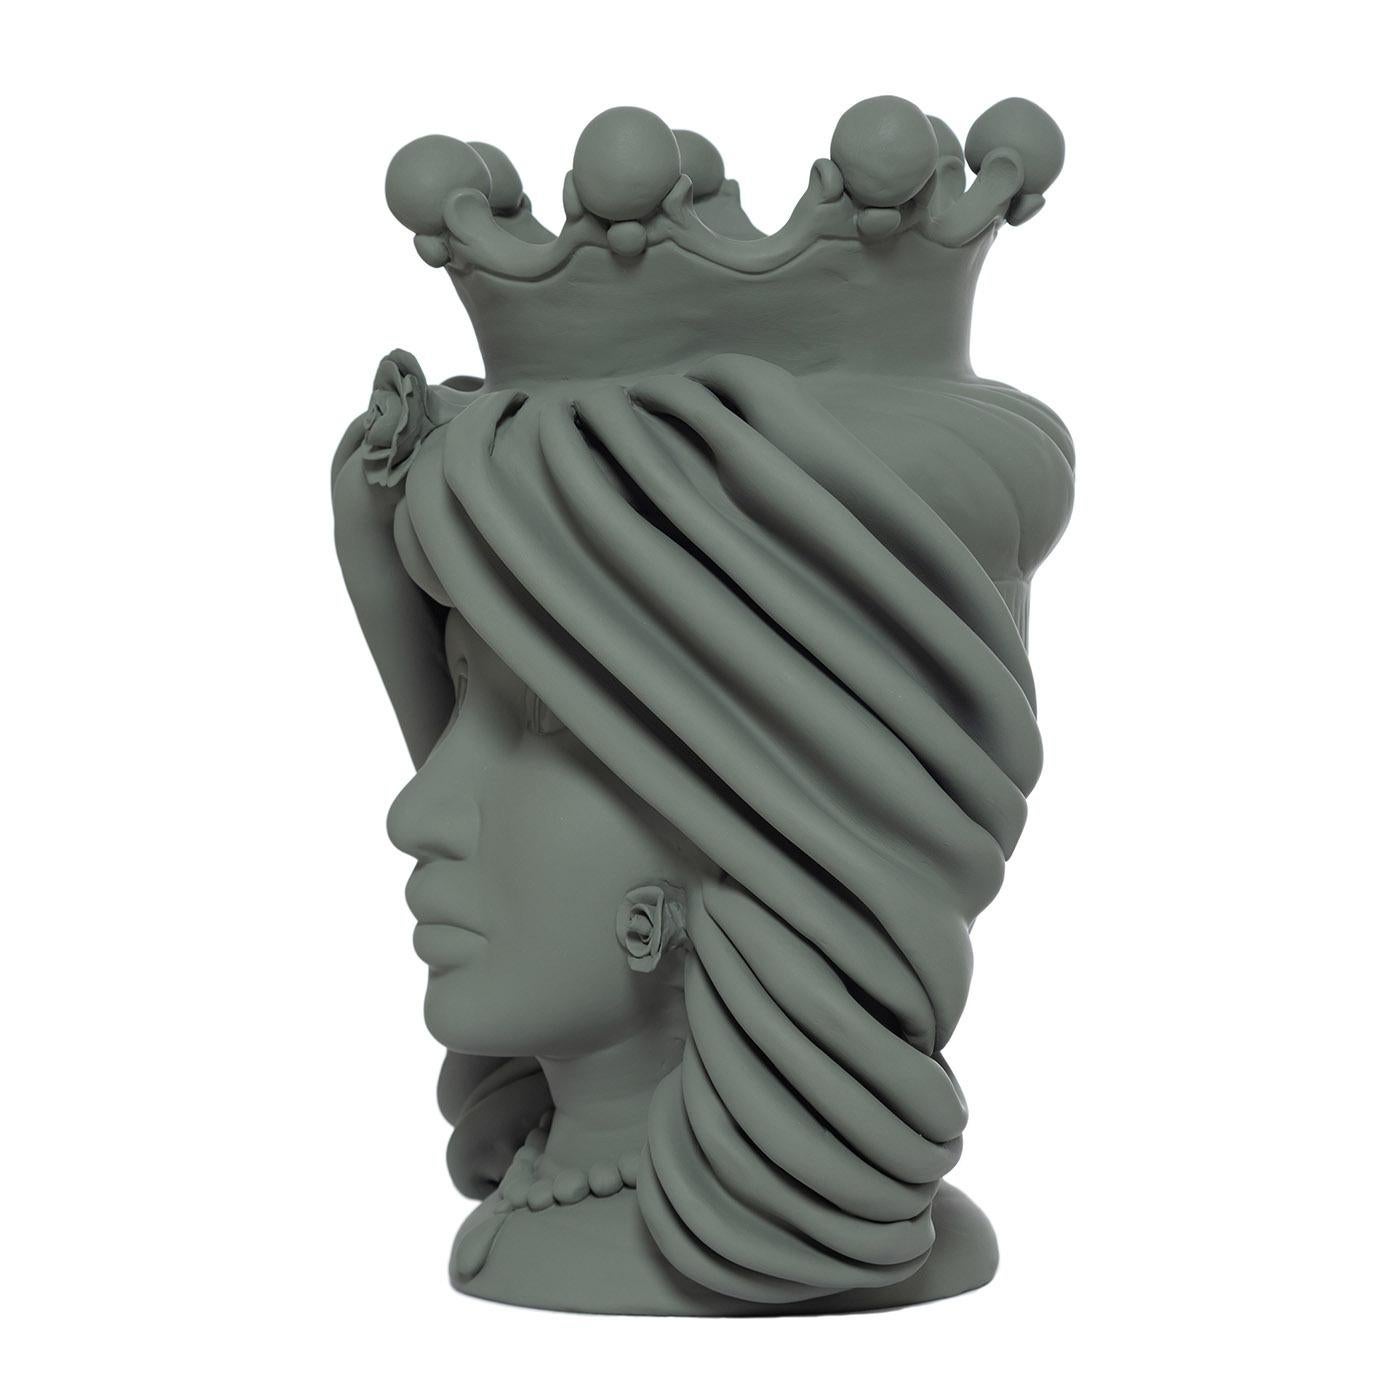 Questo vaso fatto a mano è un'interpretazione contemporanea della donna siciliana A.A. Moore, una produzione artistica iconica dell'isola. Interamente realizzato a mano in argilla, questo vaso antropomorfo ha una finitura monocromatica opaca verde